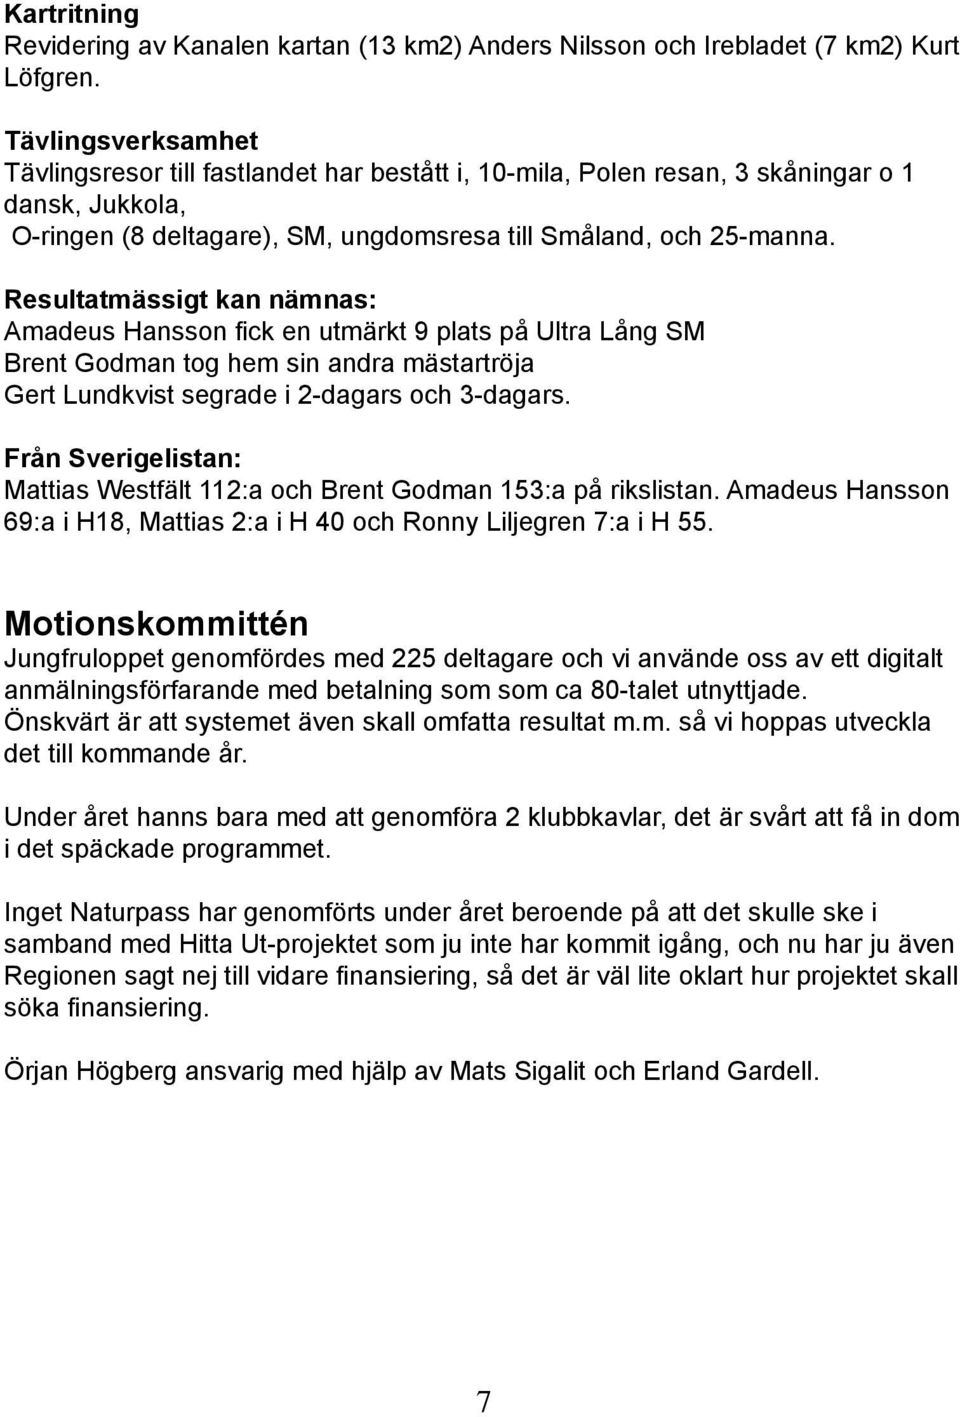 Resultatmässigt kan nämnas: Amadeus Hansson fick en utmärkt 9 plats på Ultra Lång SM Brent Godman tog hem sin andra mästartröja Gert Lundkvist segrade i 2-dagars och 3-dagars.